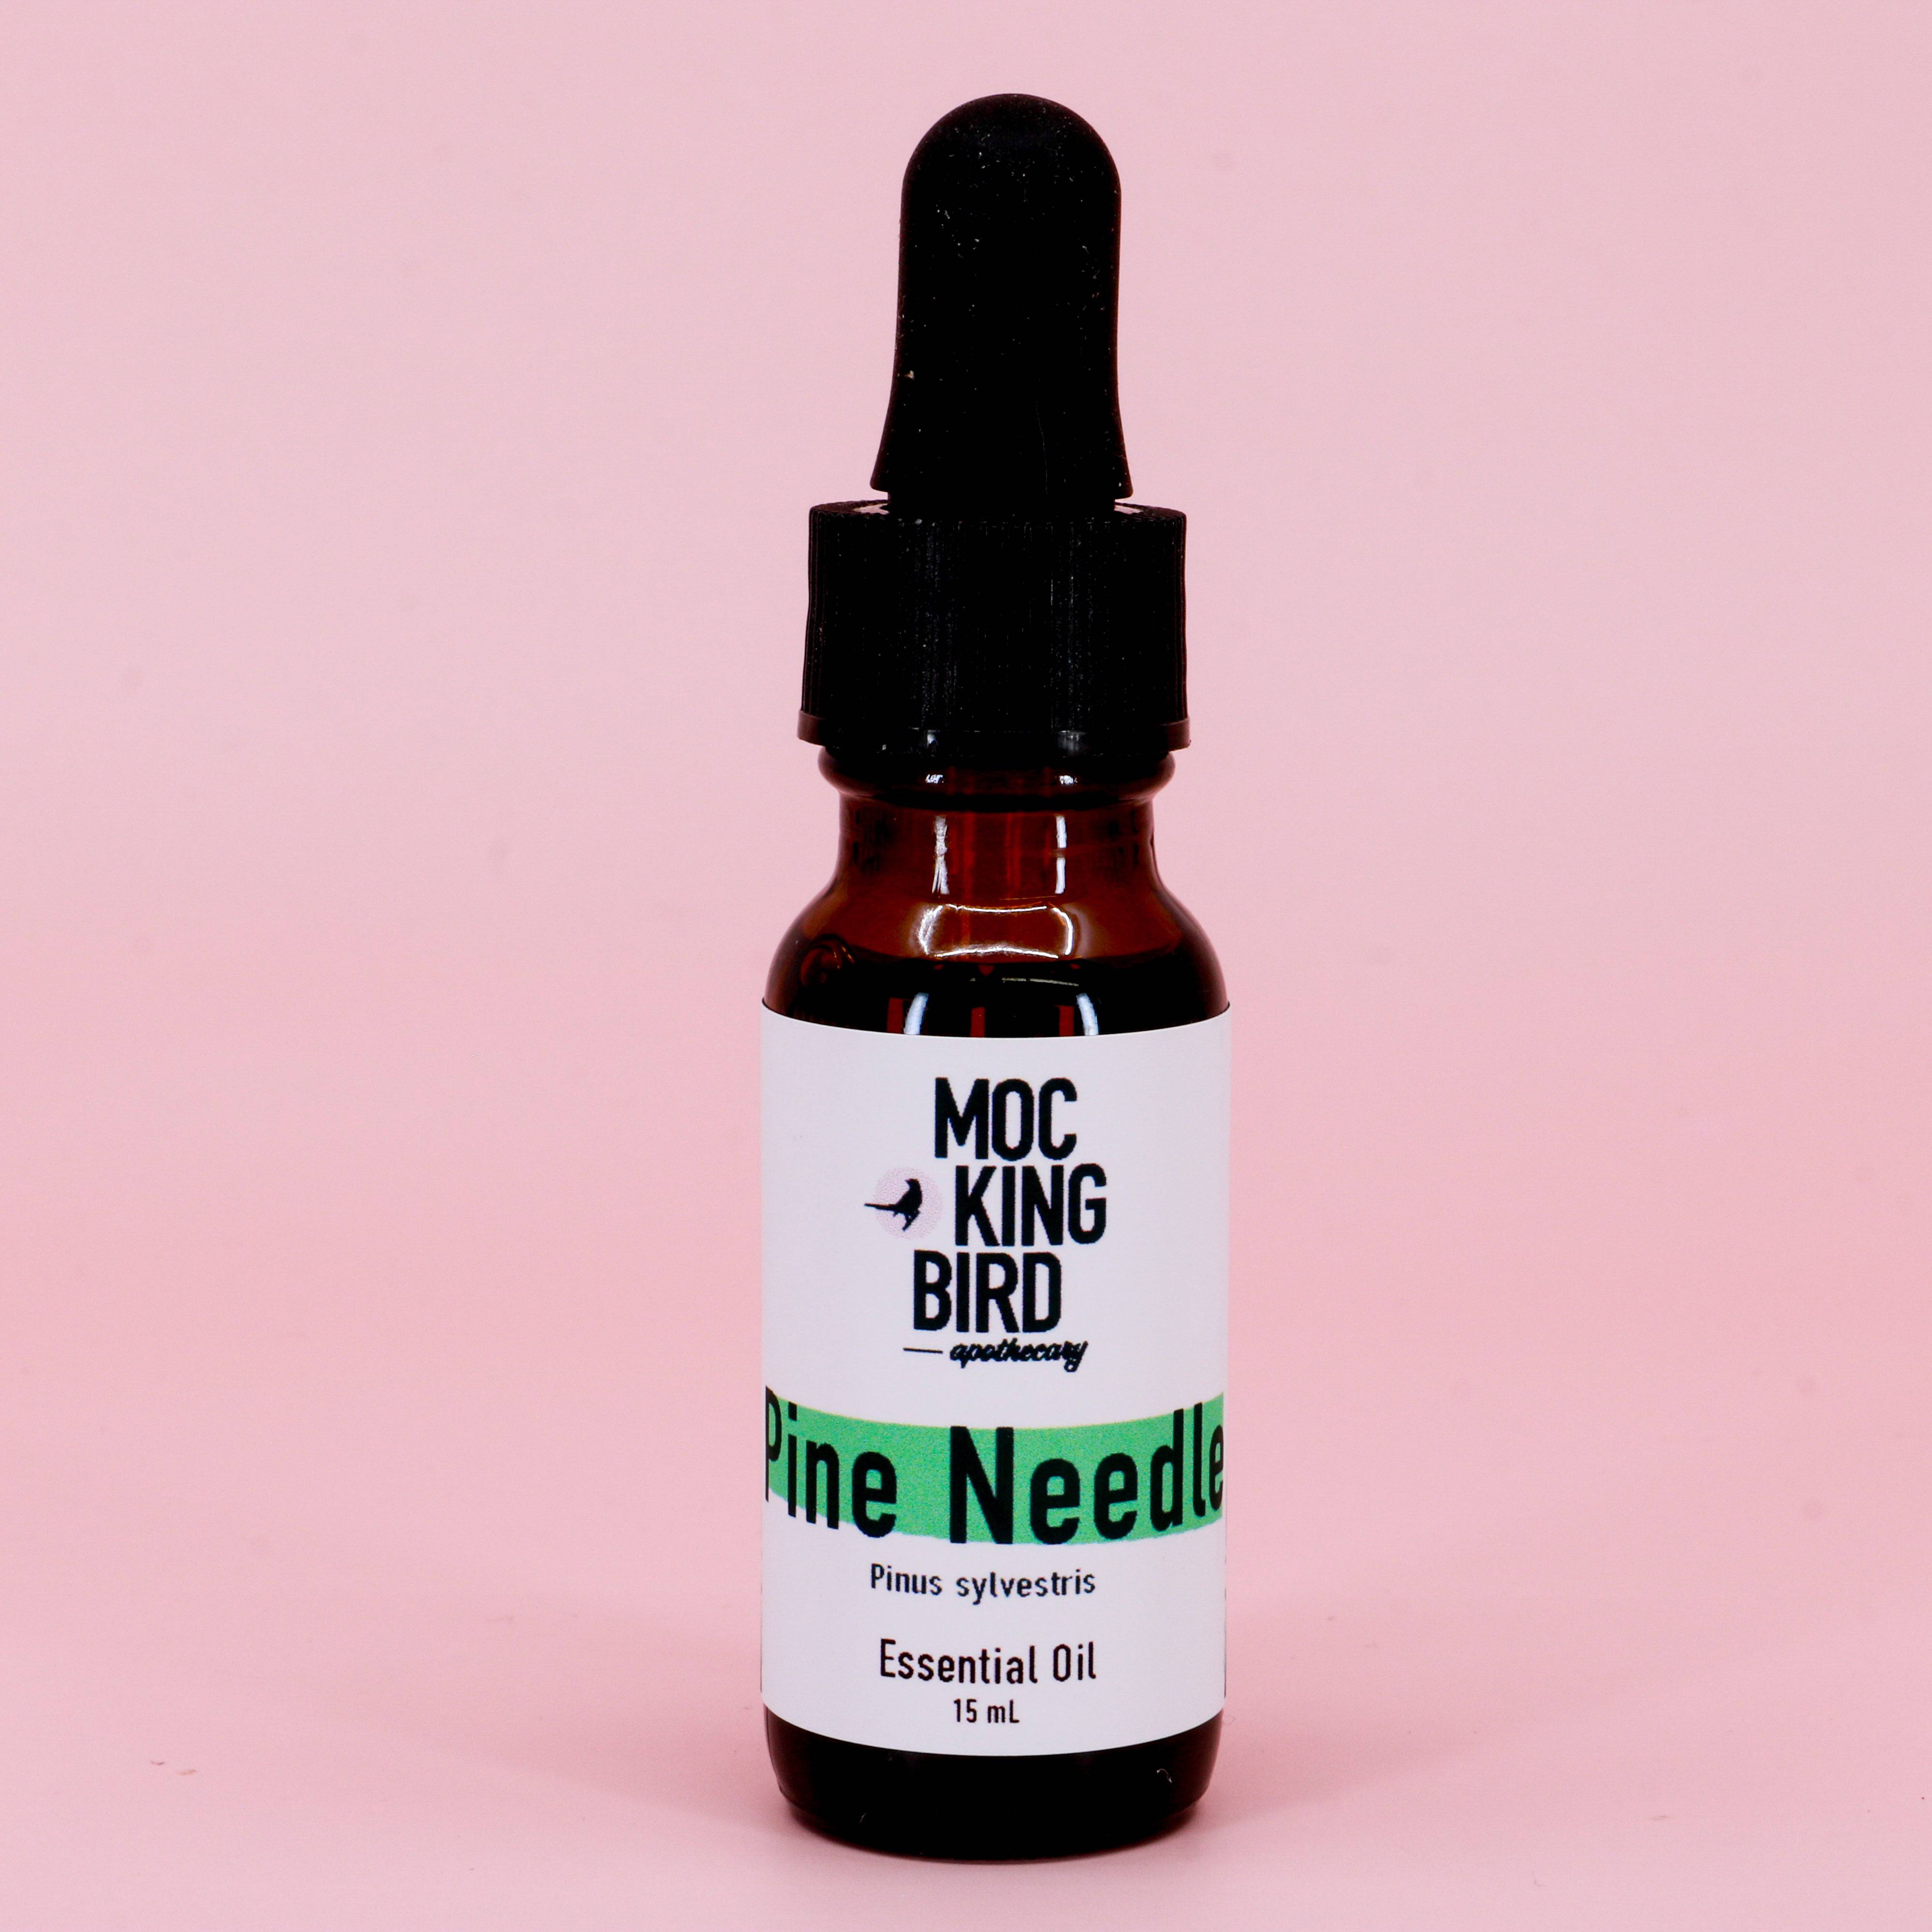 Pine Needle Essential Oil (Pinus sylvestris) - The Mockingbird Apothecary & General Store